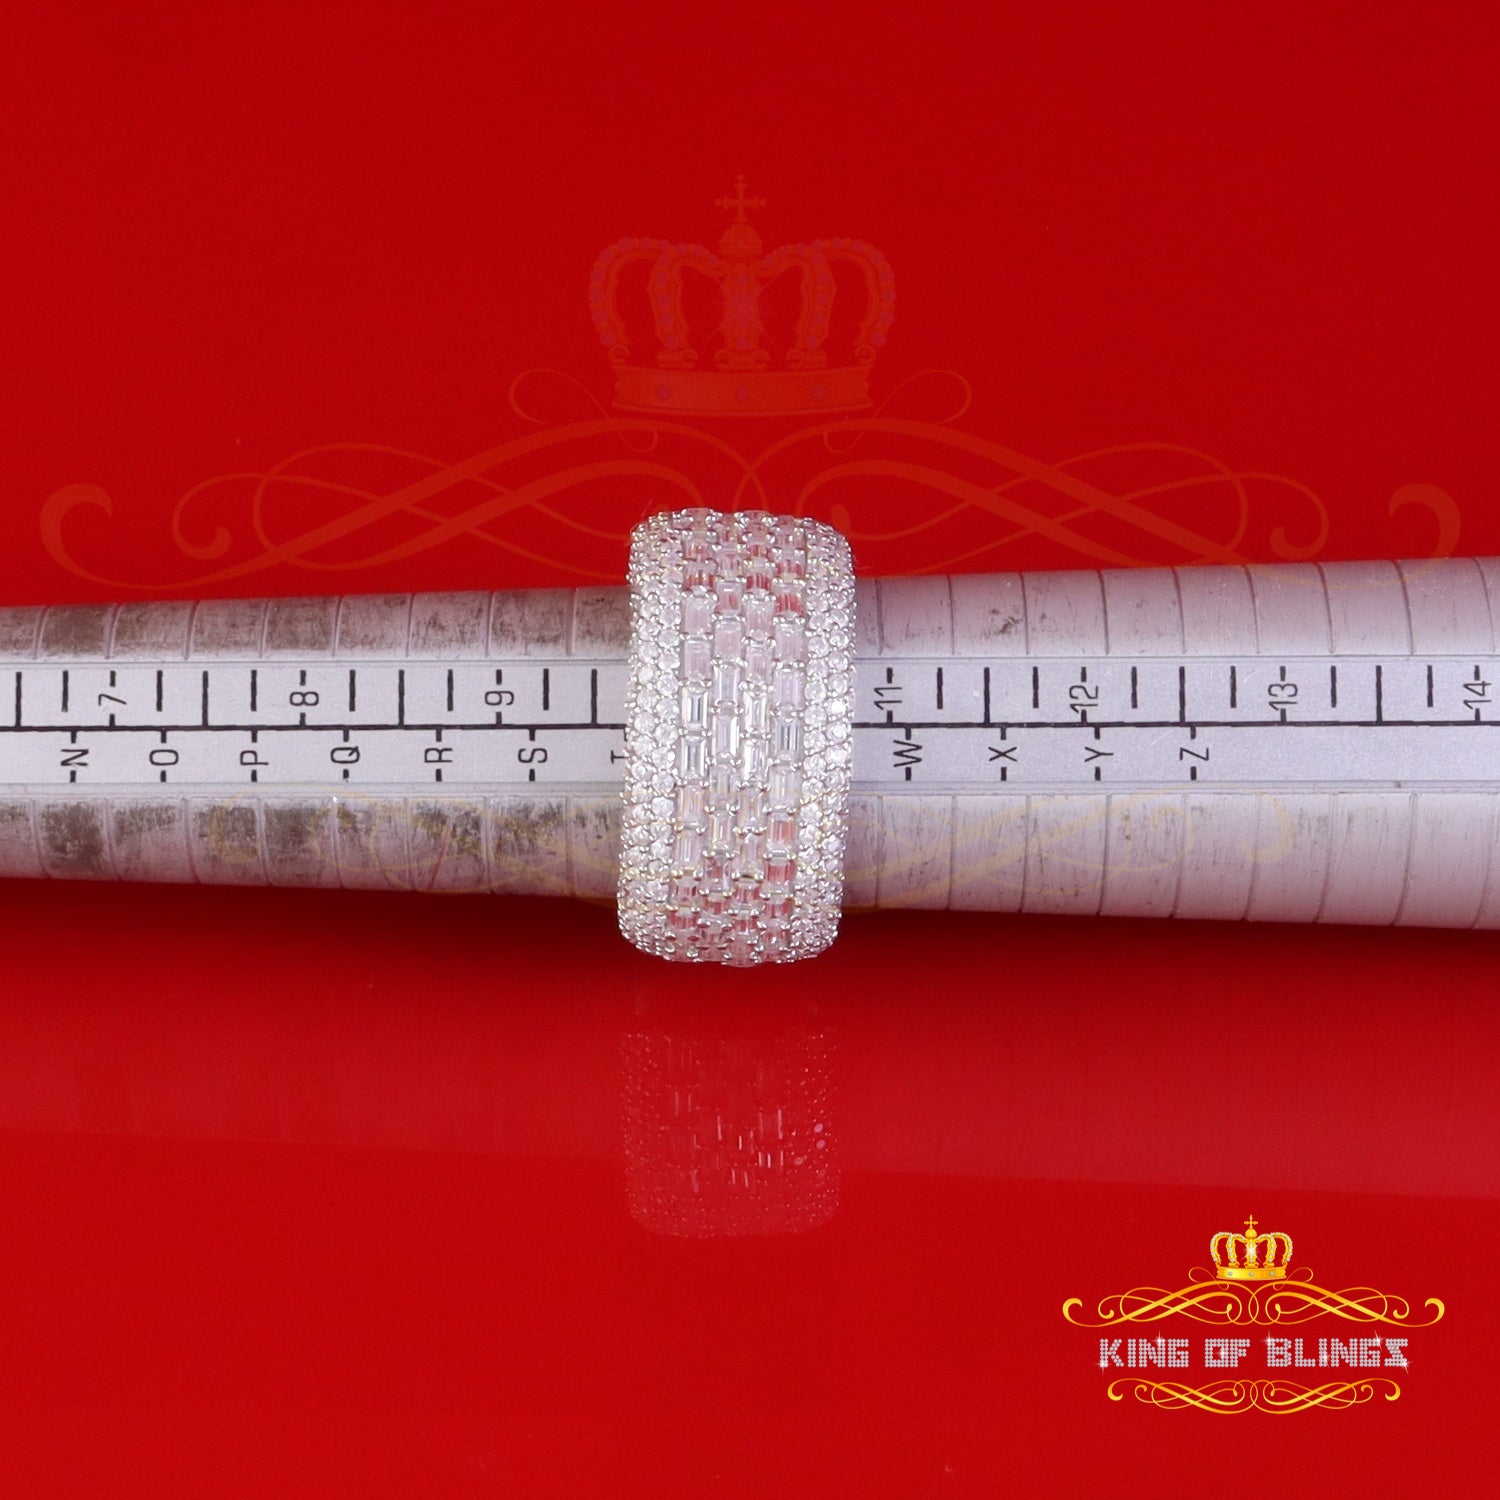 King of Bling's Men's/Womens Silver White 6.00ct VVS 'D' Moissanite Baguette Stone Band Size 10 King of Blings